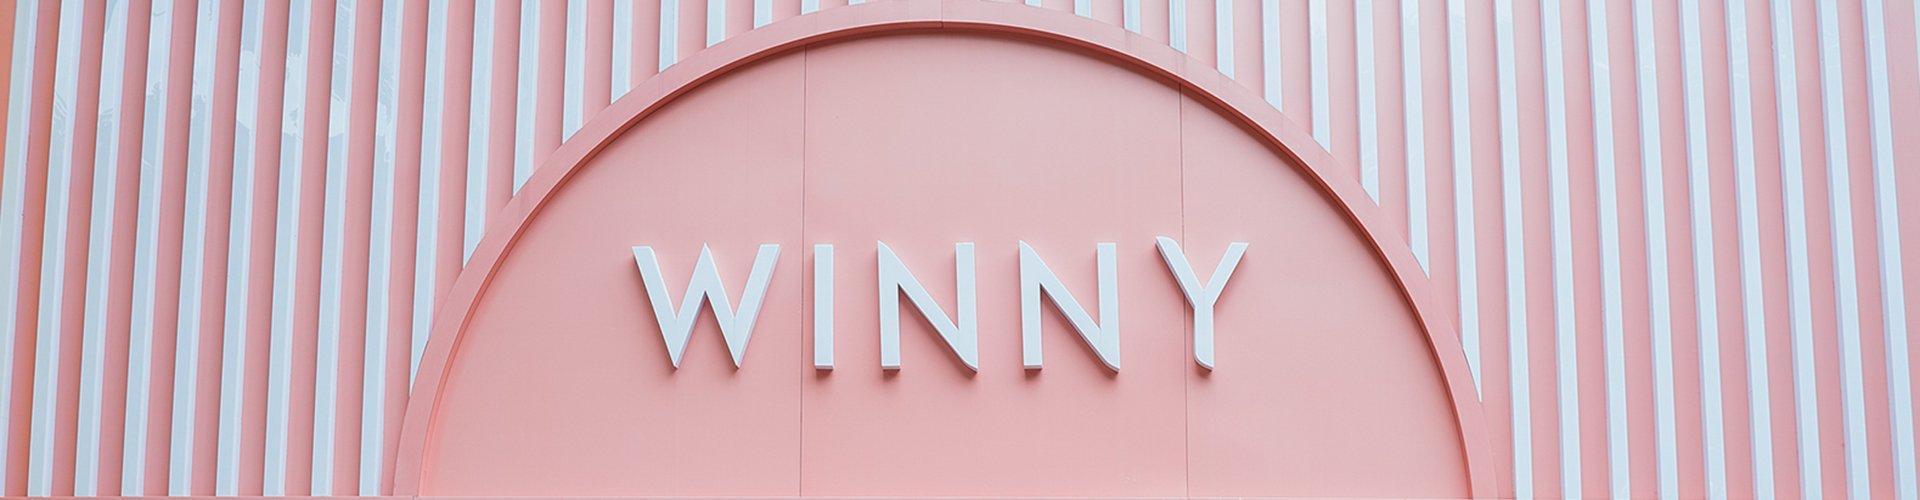 Danh sách hệ thống cửa hàng Winny 